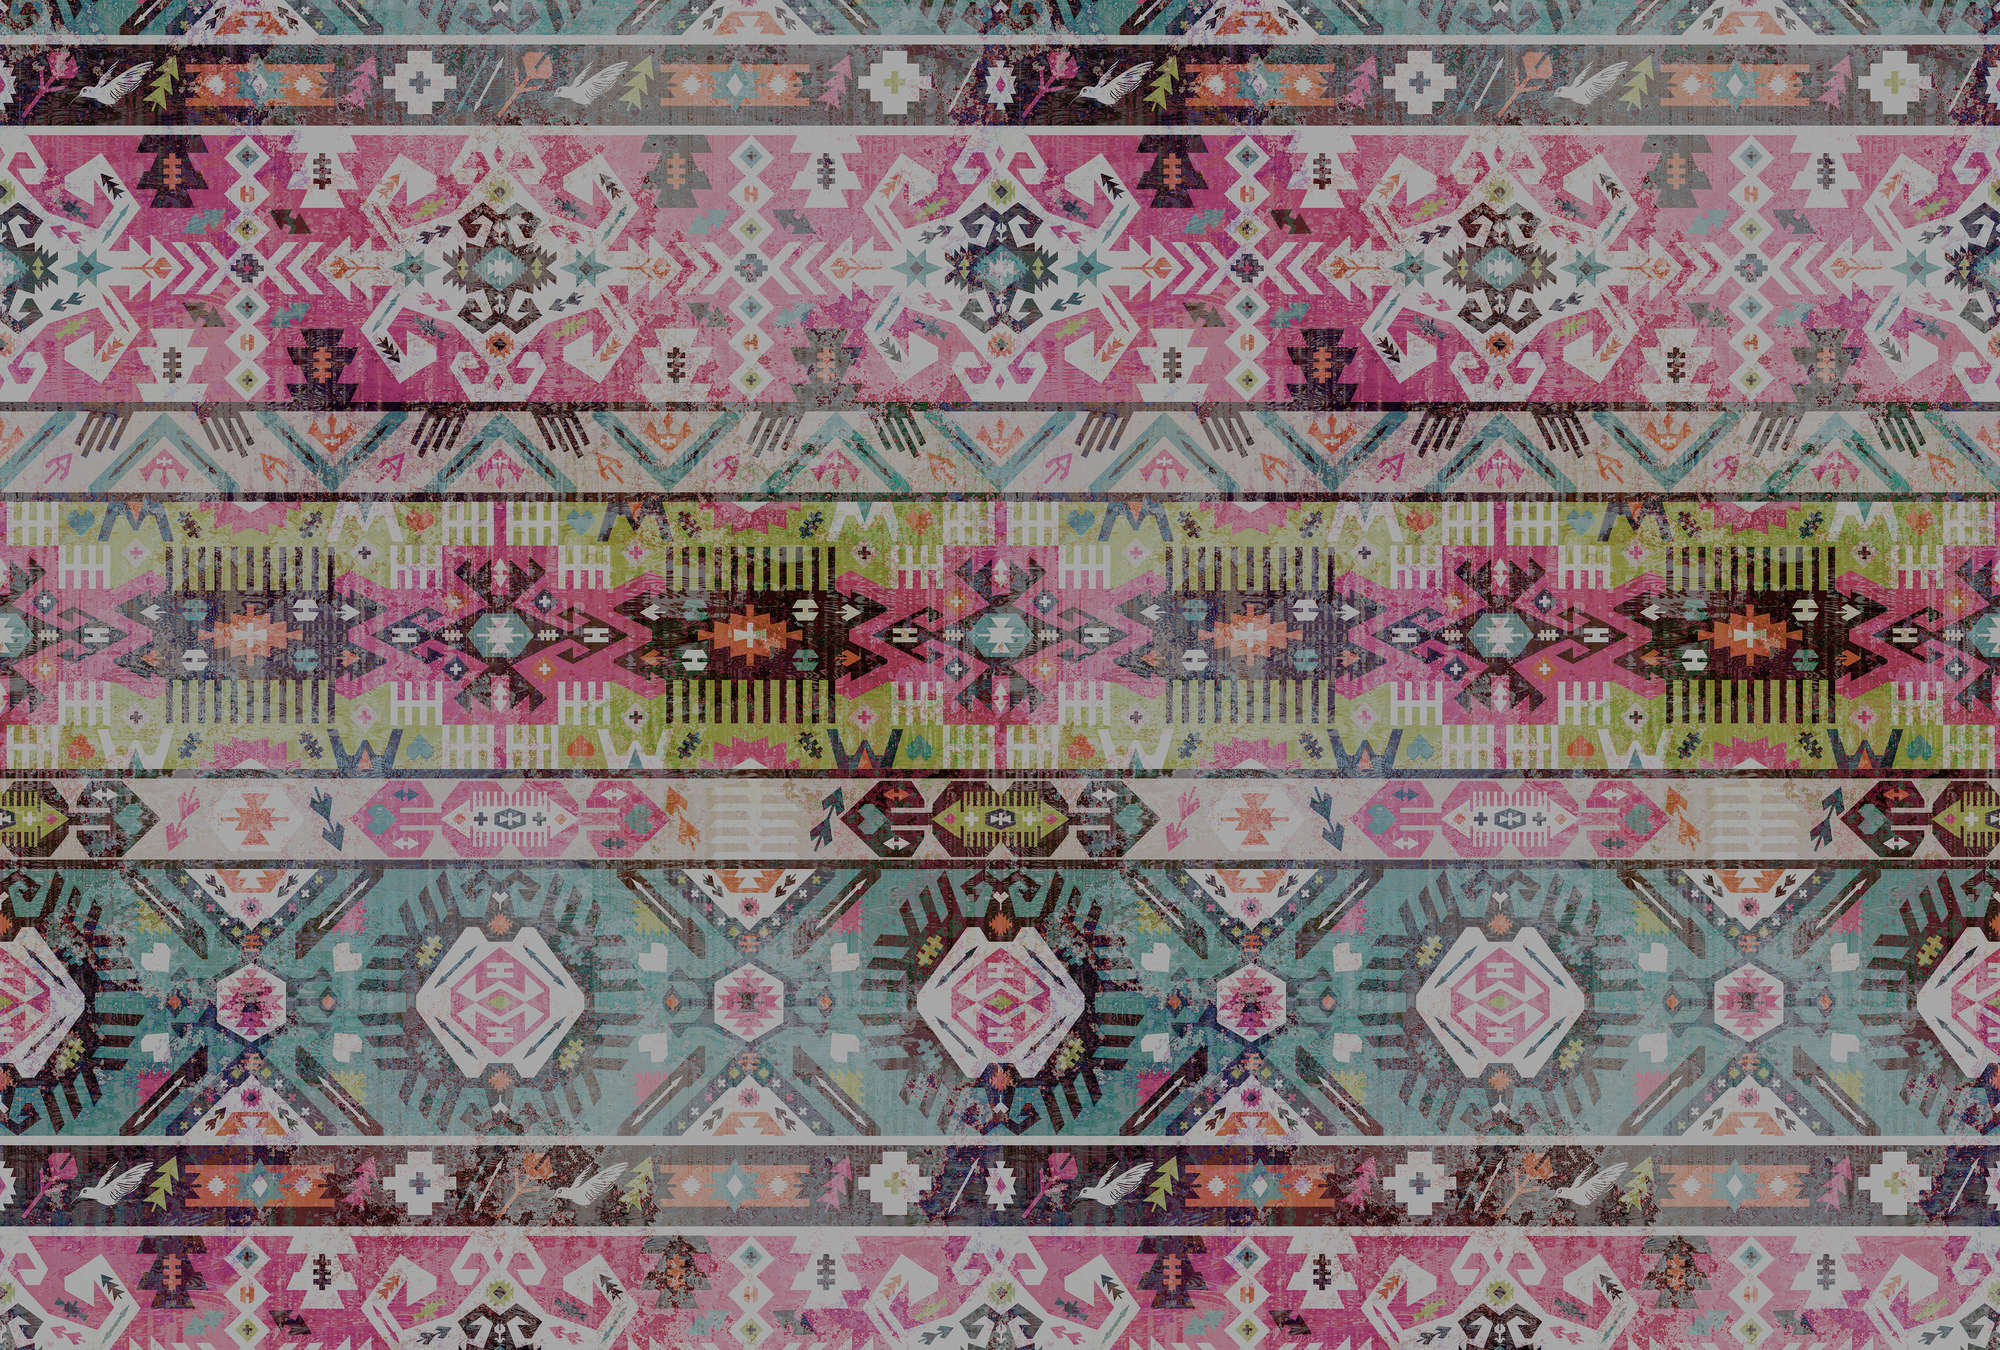             Papier peint Ethno-textile, géométrique - rose, vert
        